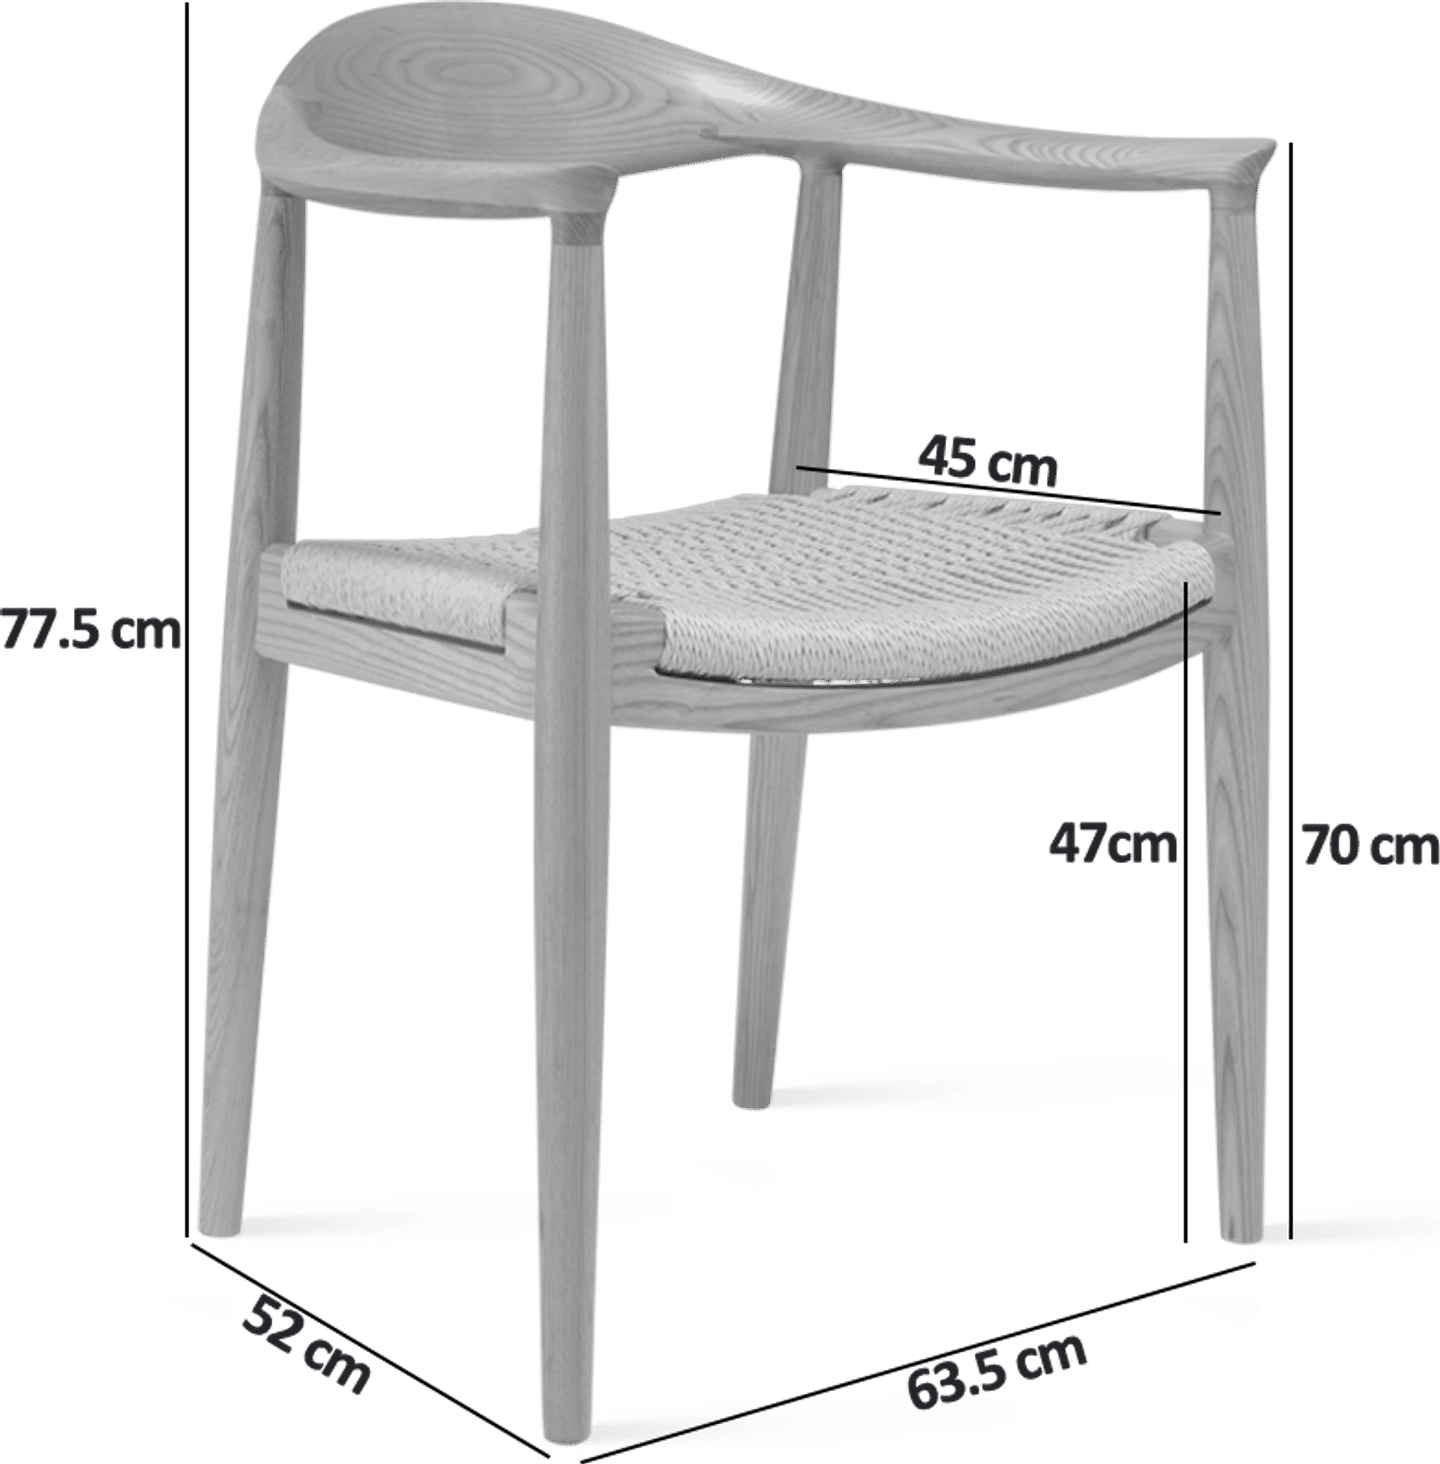 The Chair - PP501 - Sittplats med vass i kordel Walnut image.